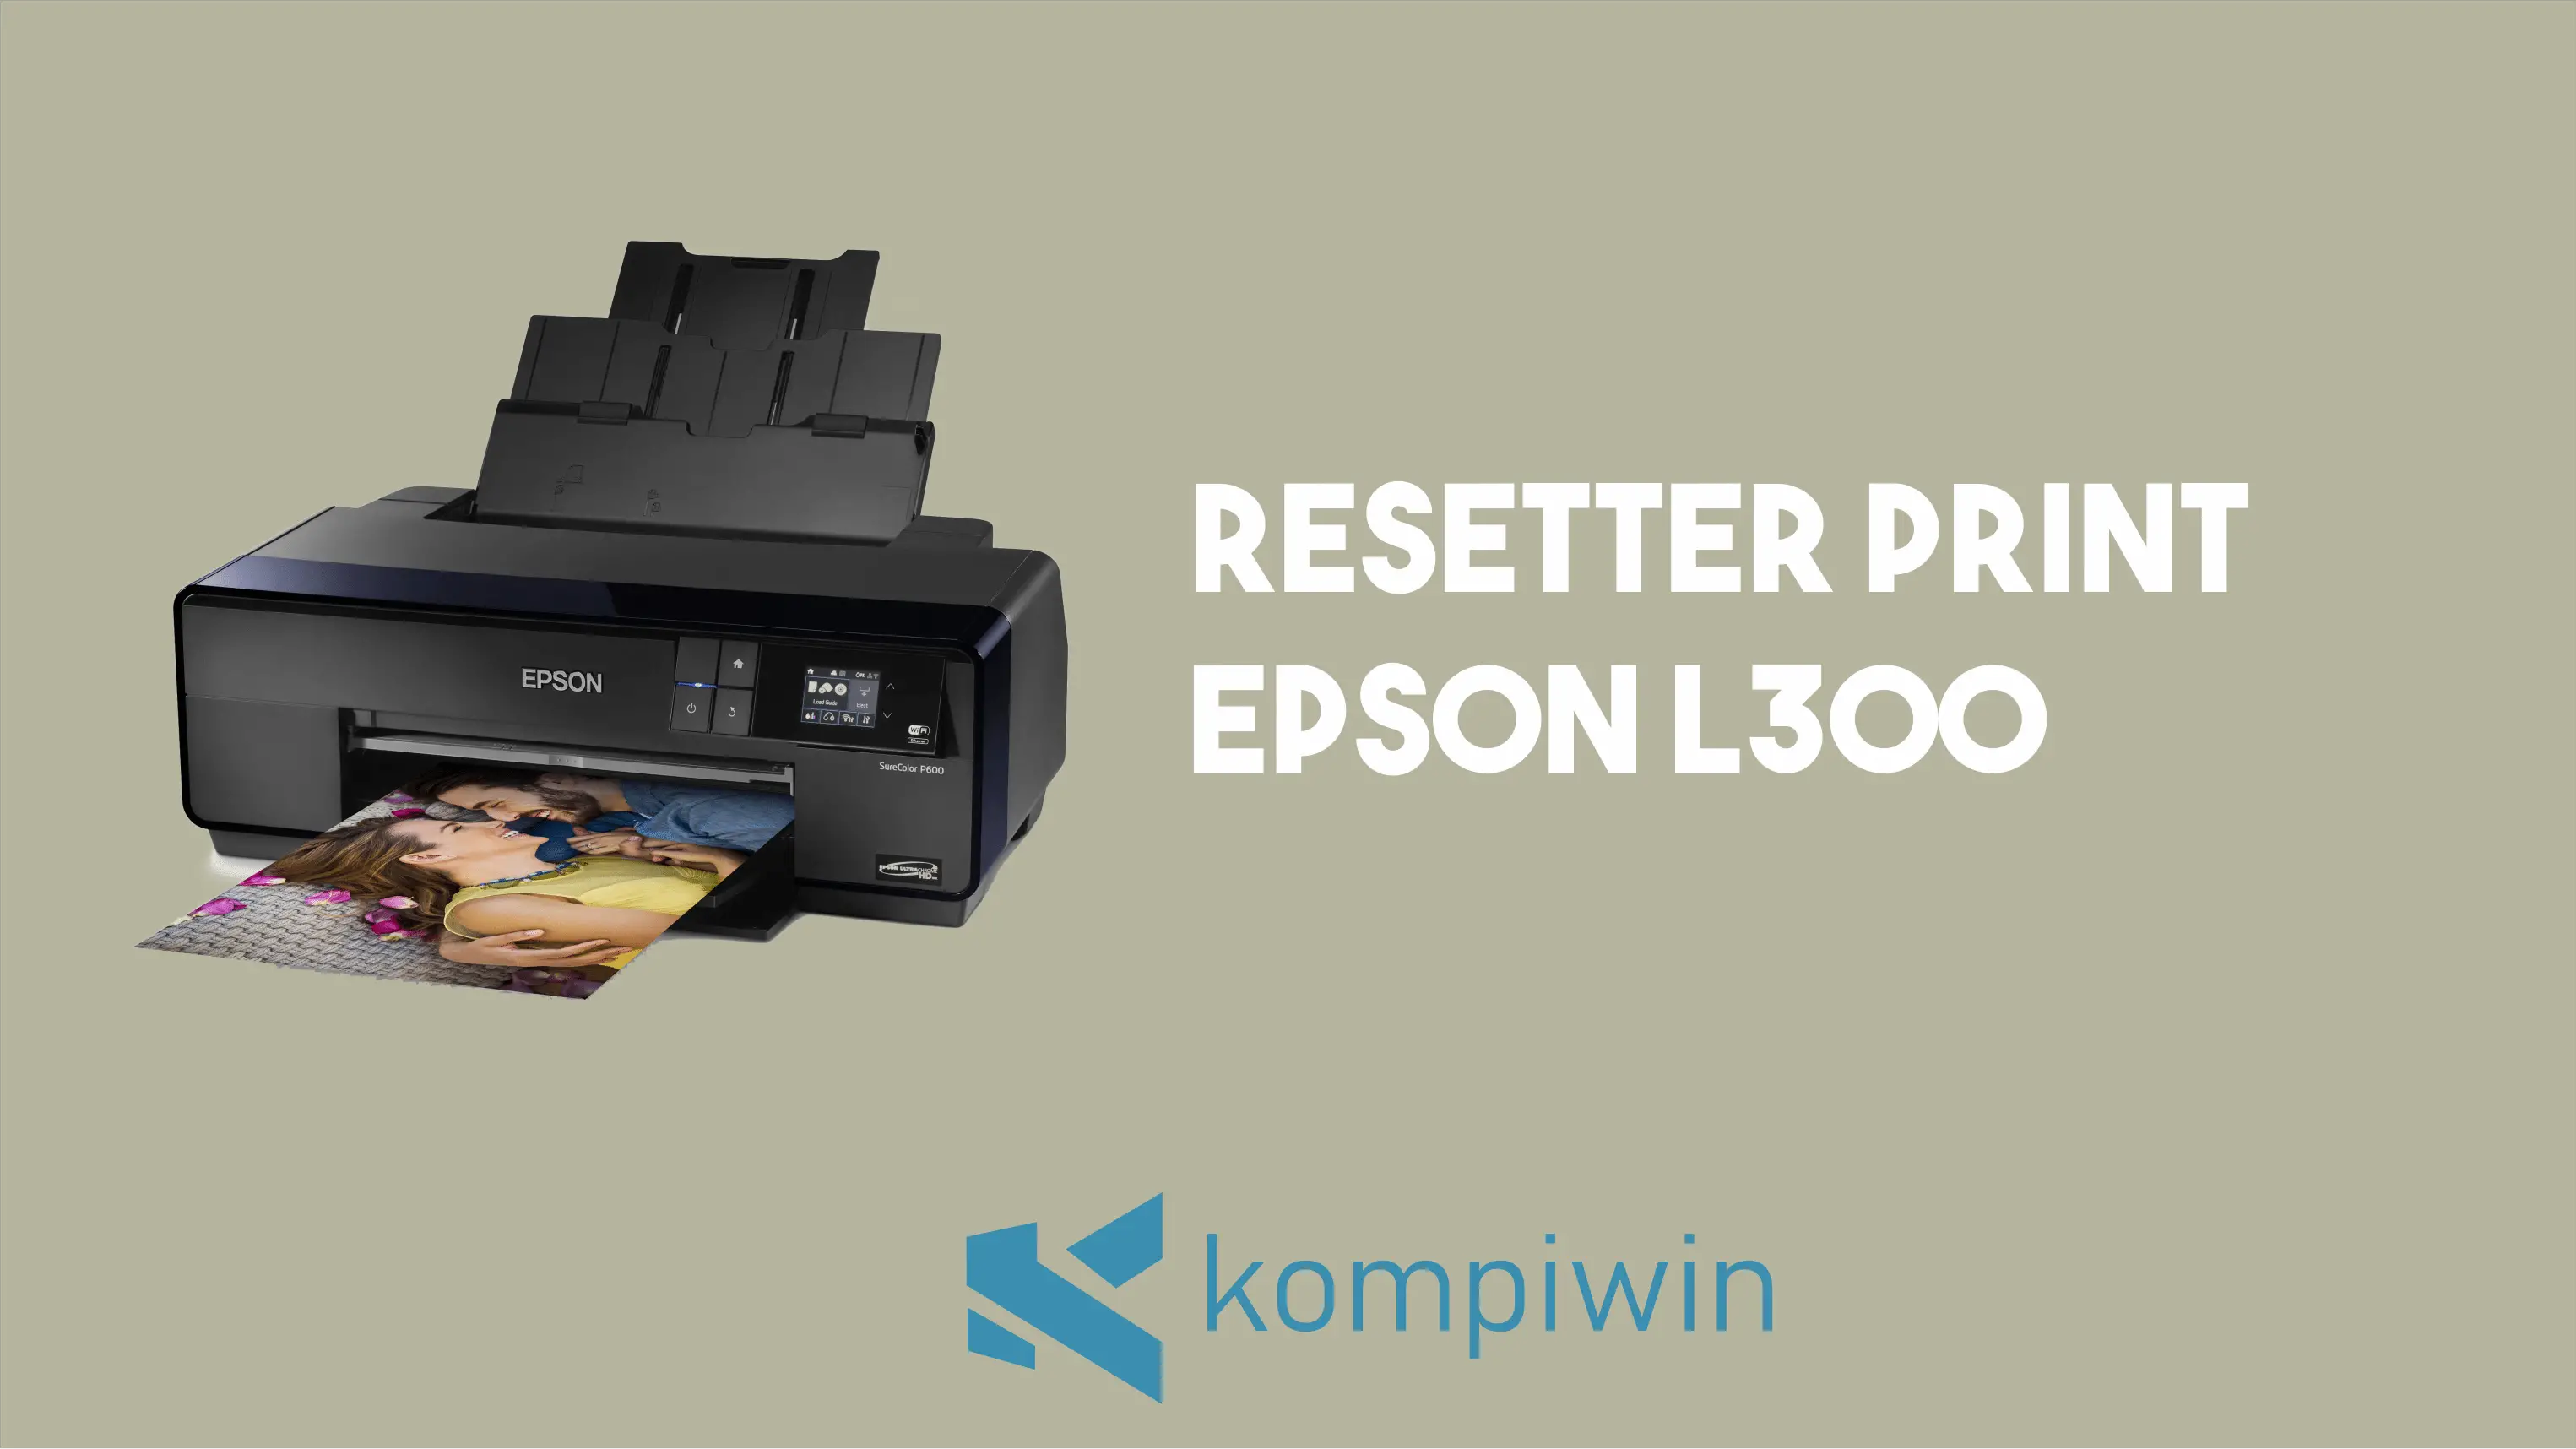 Cara Reset Epson L300